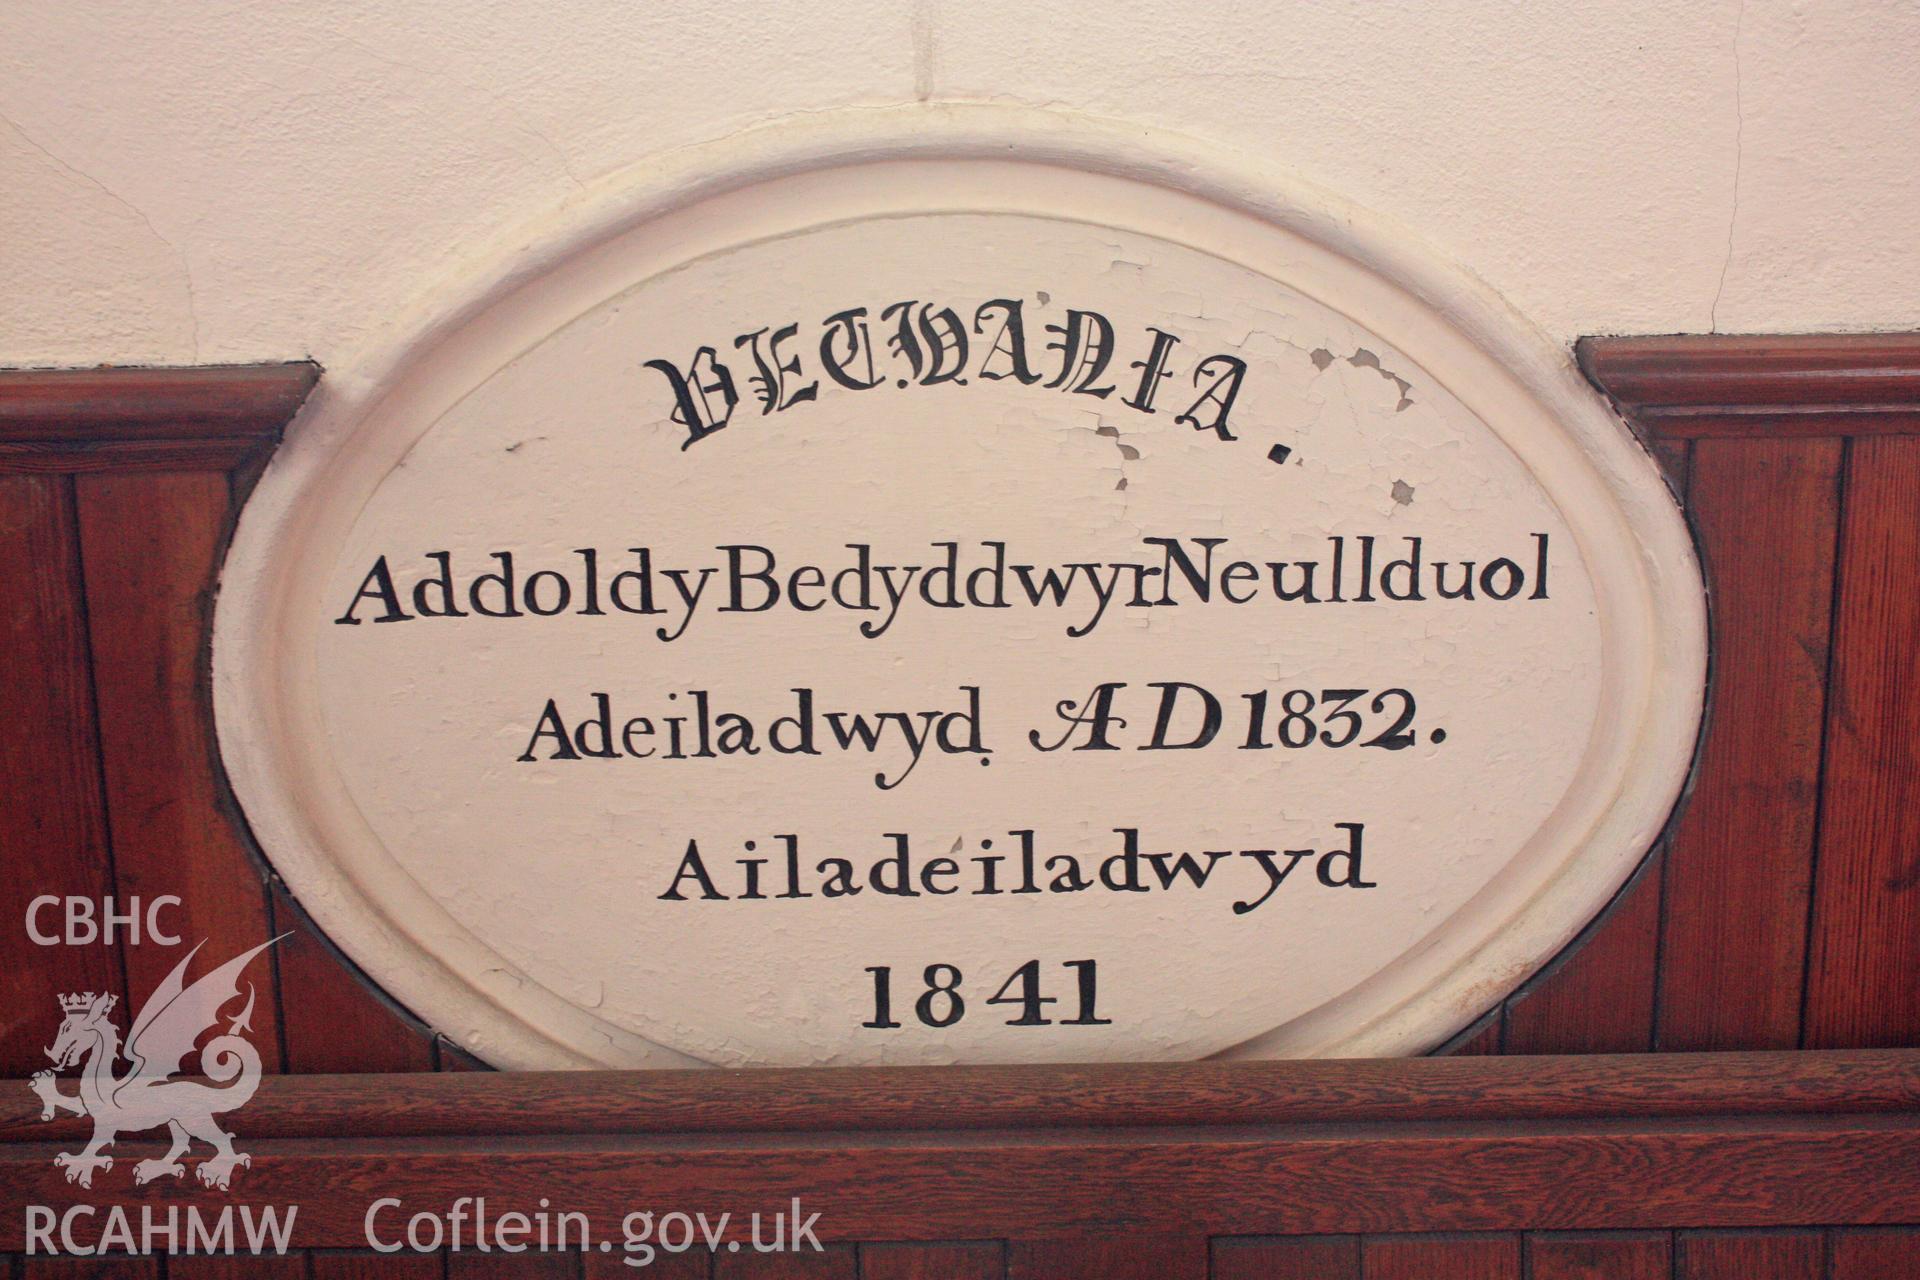 Datestone/name plaque from 1841 rebuild, now held in vestibule